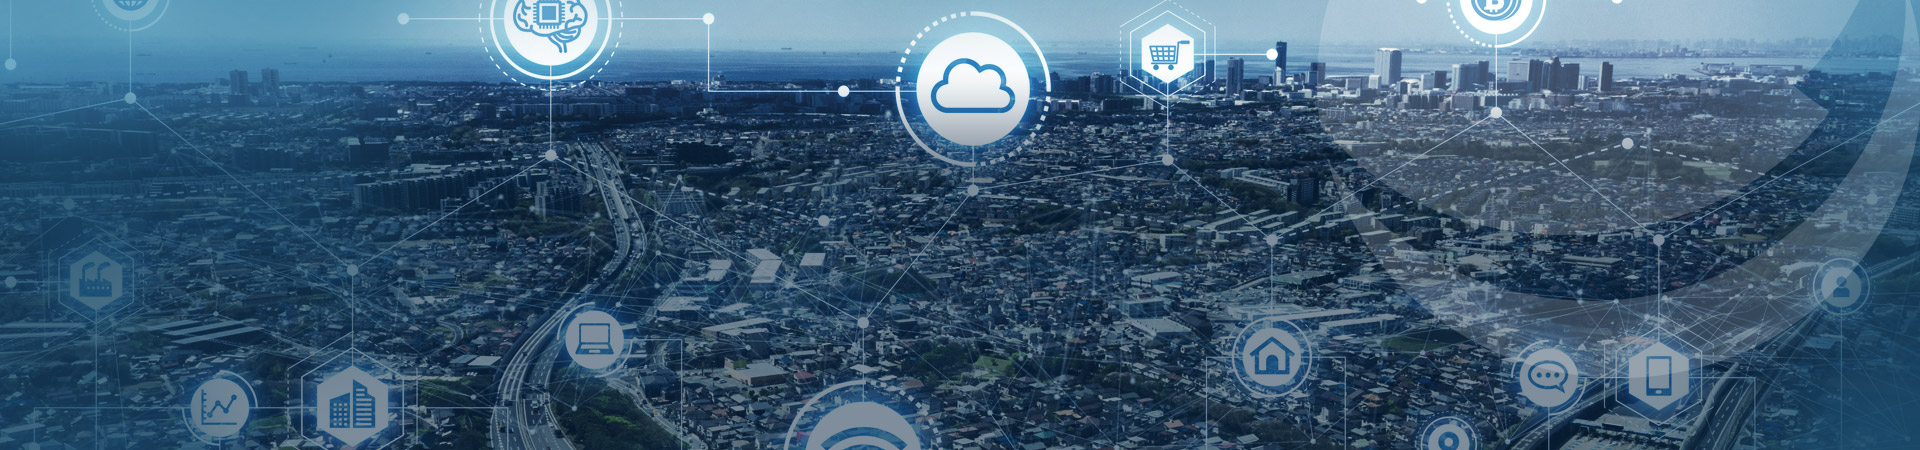 Smart City – Auf dem Weg zur Realität mit Standards